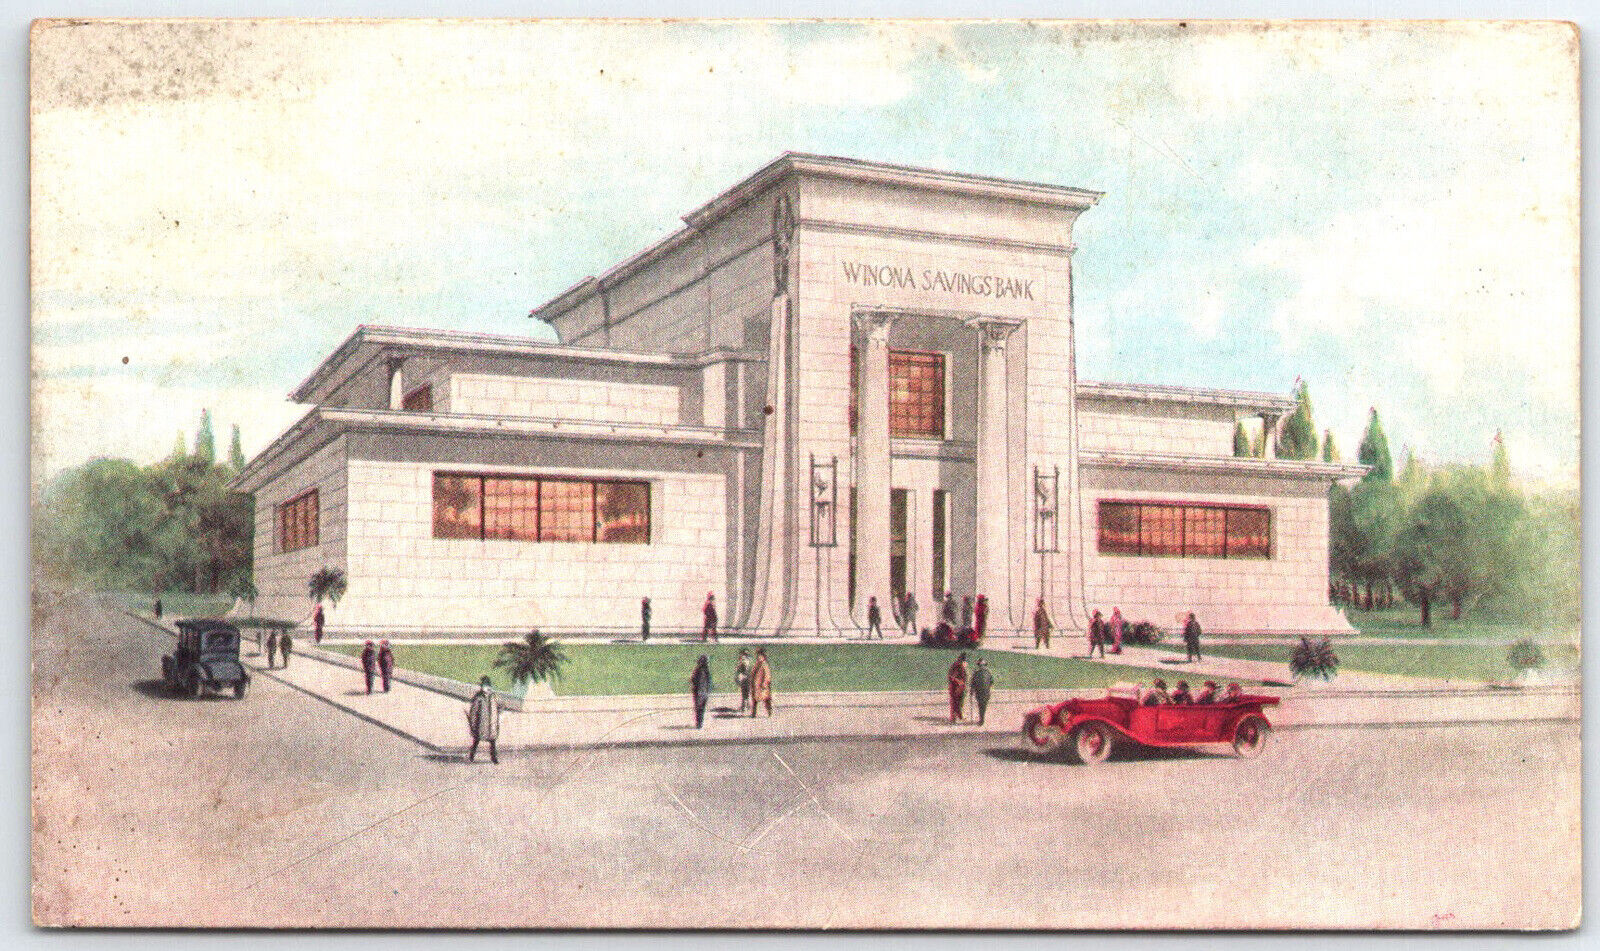 Winona Minnesota The Saving Bank Building Vintage Postcard